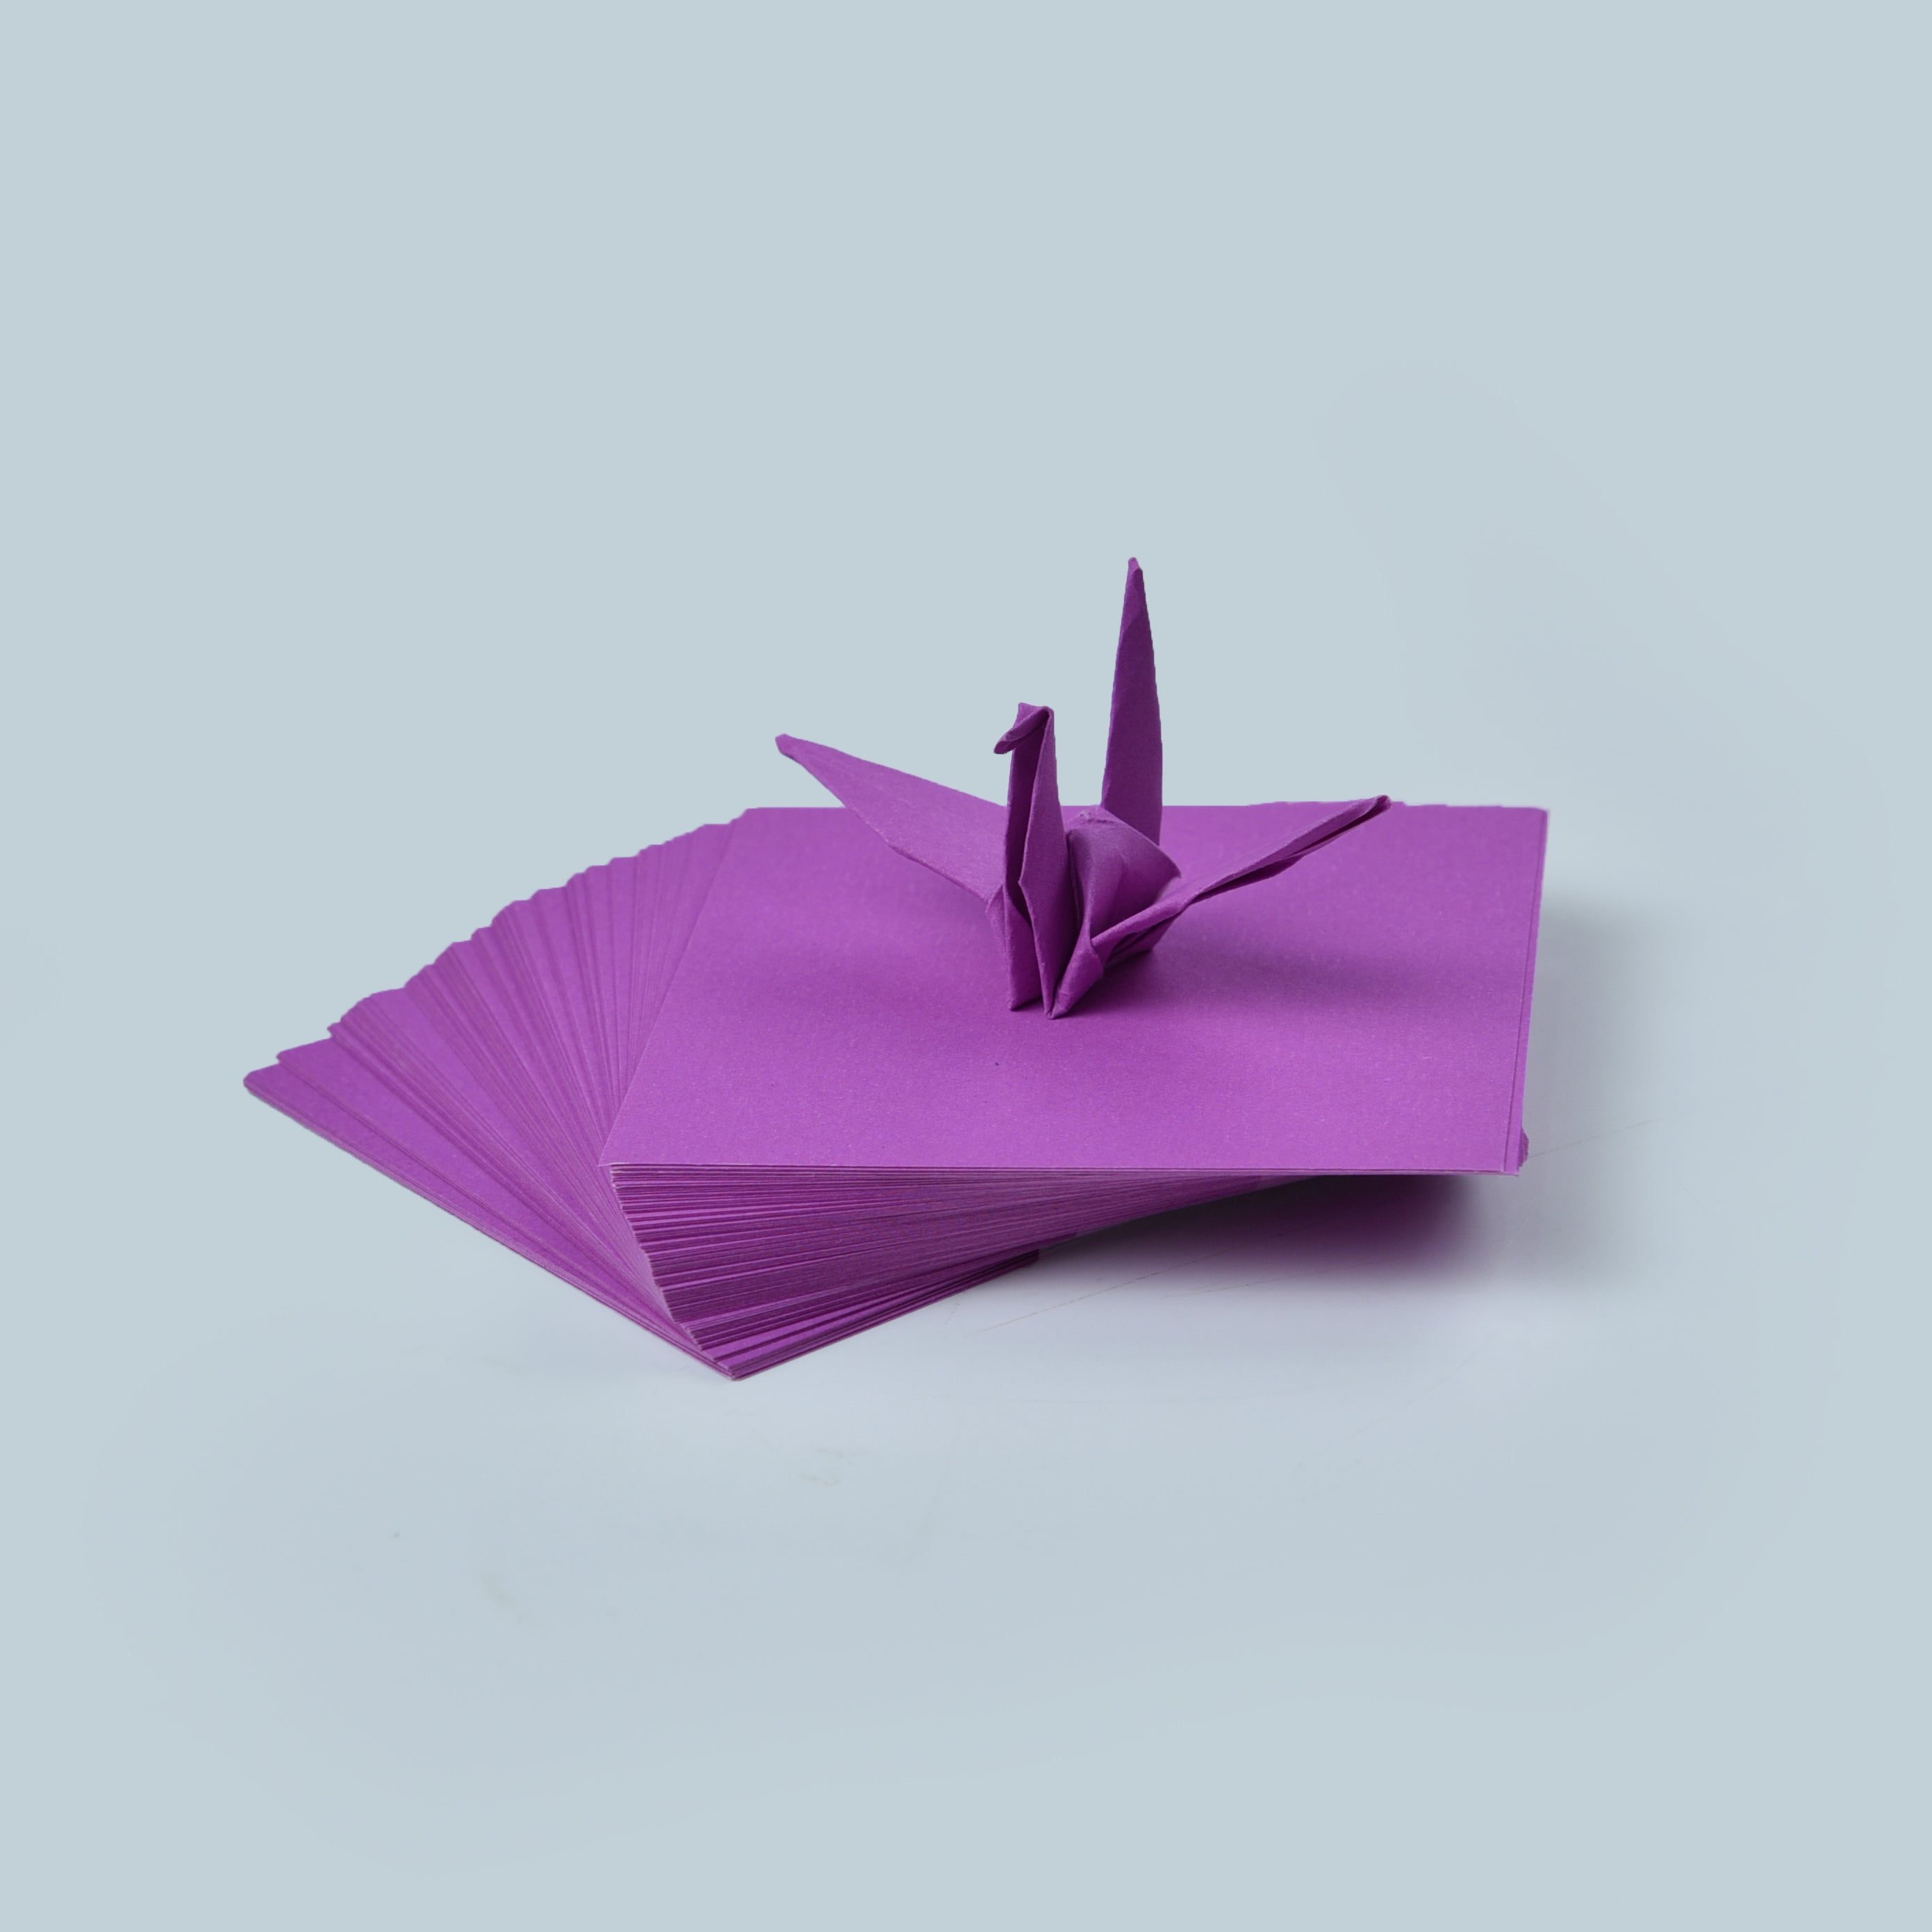 100 fogli di carta origami - 3x3 pollici - Confezione di carta quadrata per piegare, gru origami e decorazioni - S08